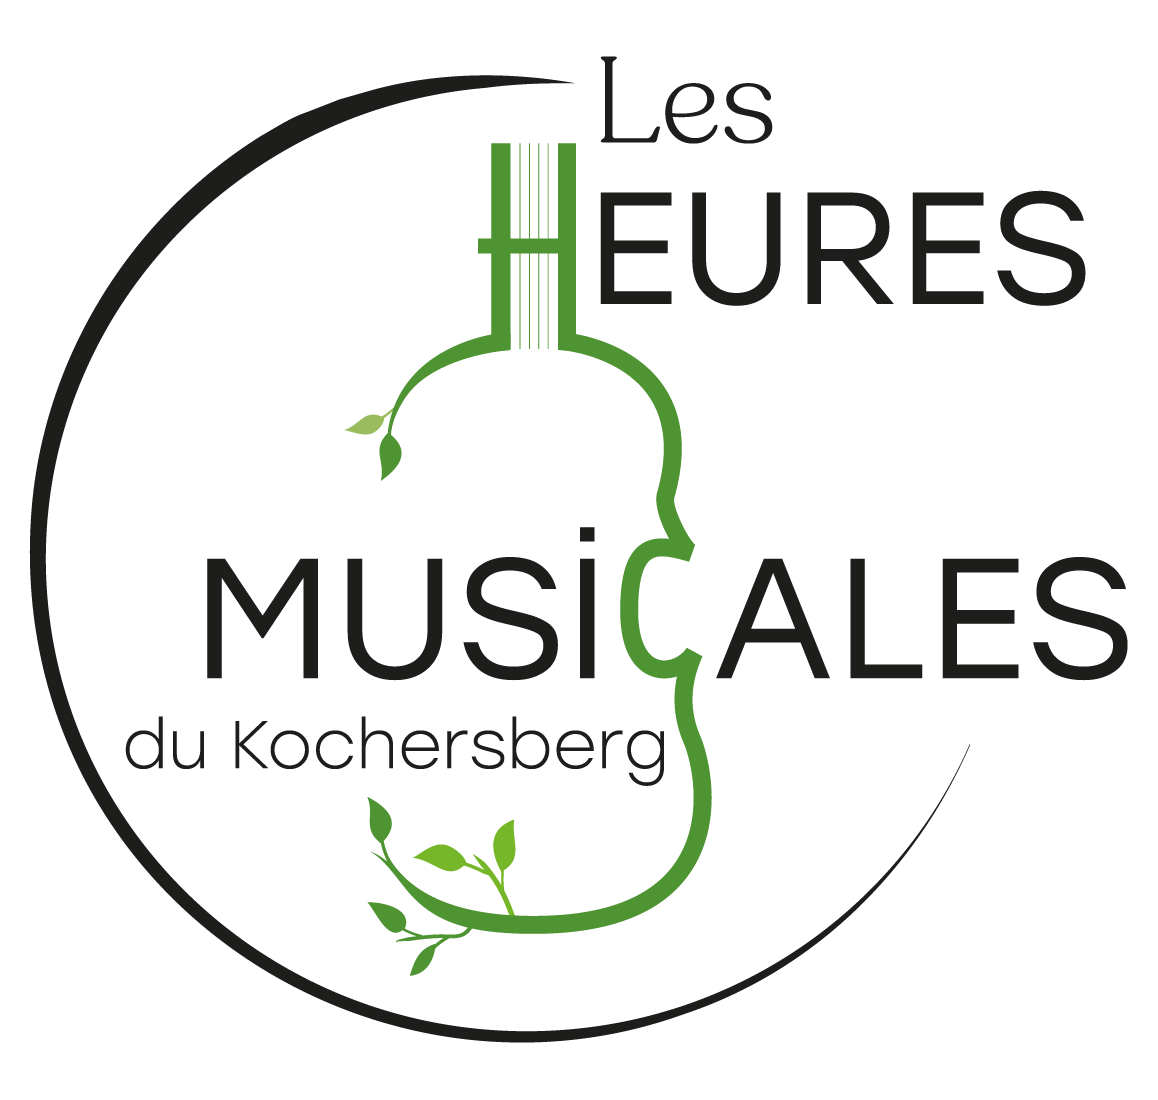 Les Heures Musicales du Kochersberg